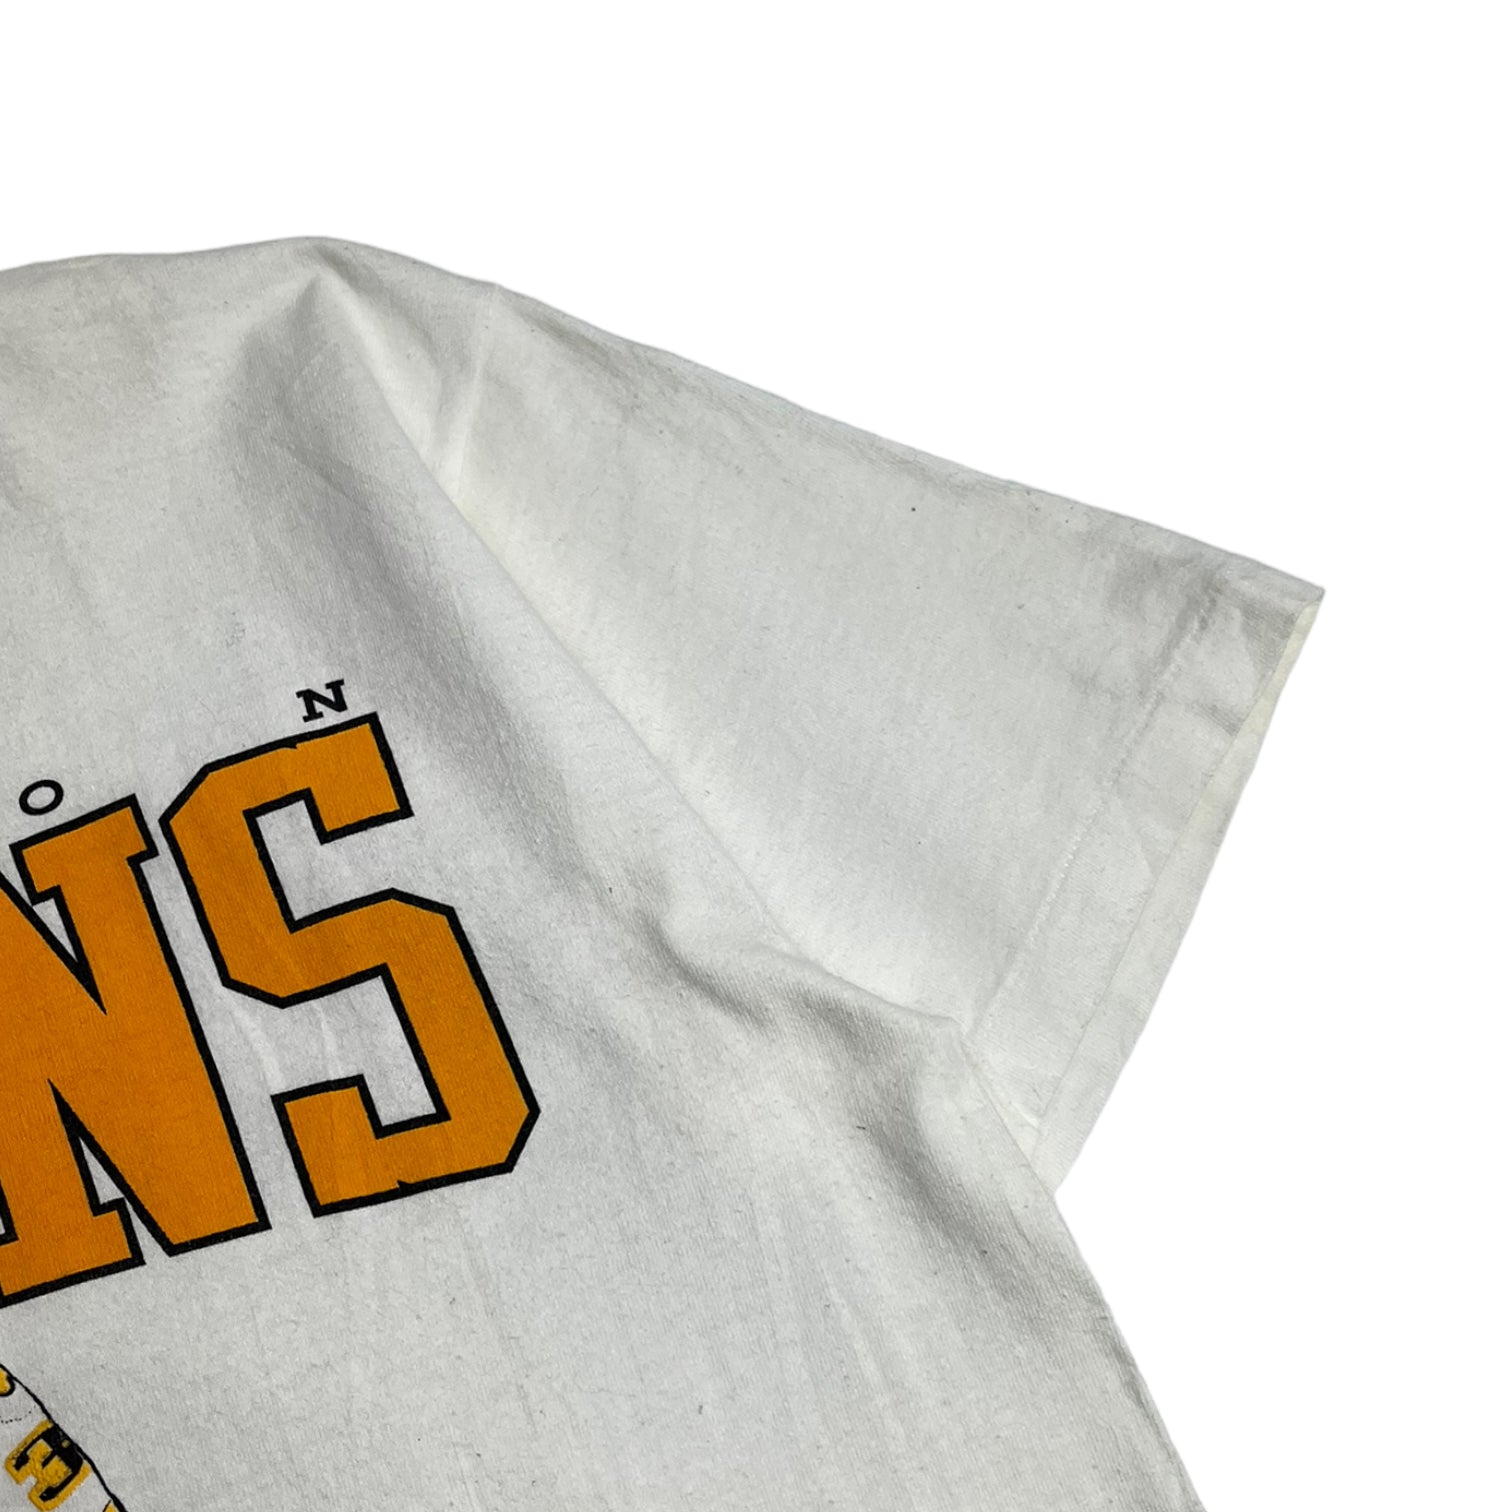 1989 Boston Bruins Goalie T-Shirt White